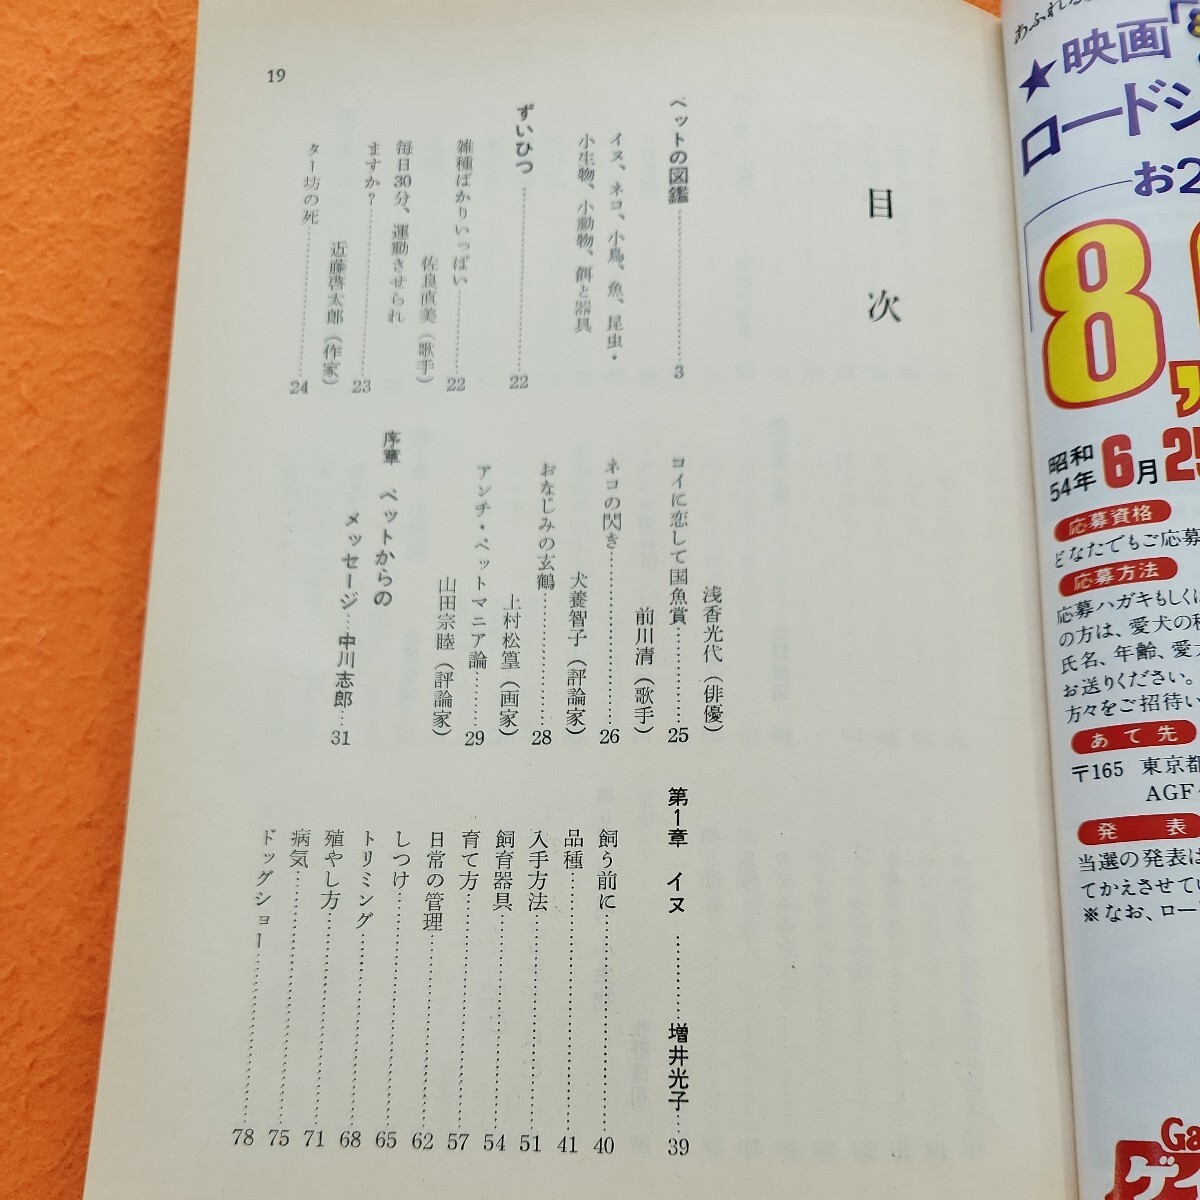 C08-120 SHOPPING SPECLALかわいいペットの育児百科日本経済新聞社発行_画像2